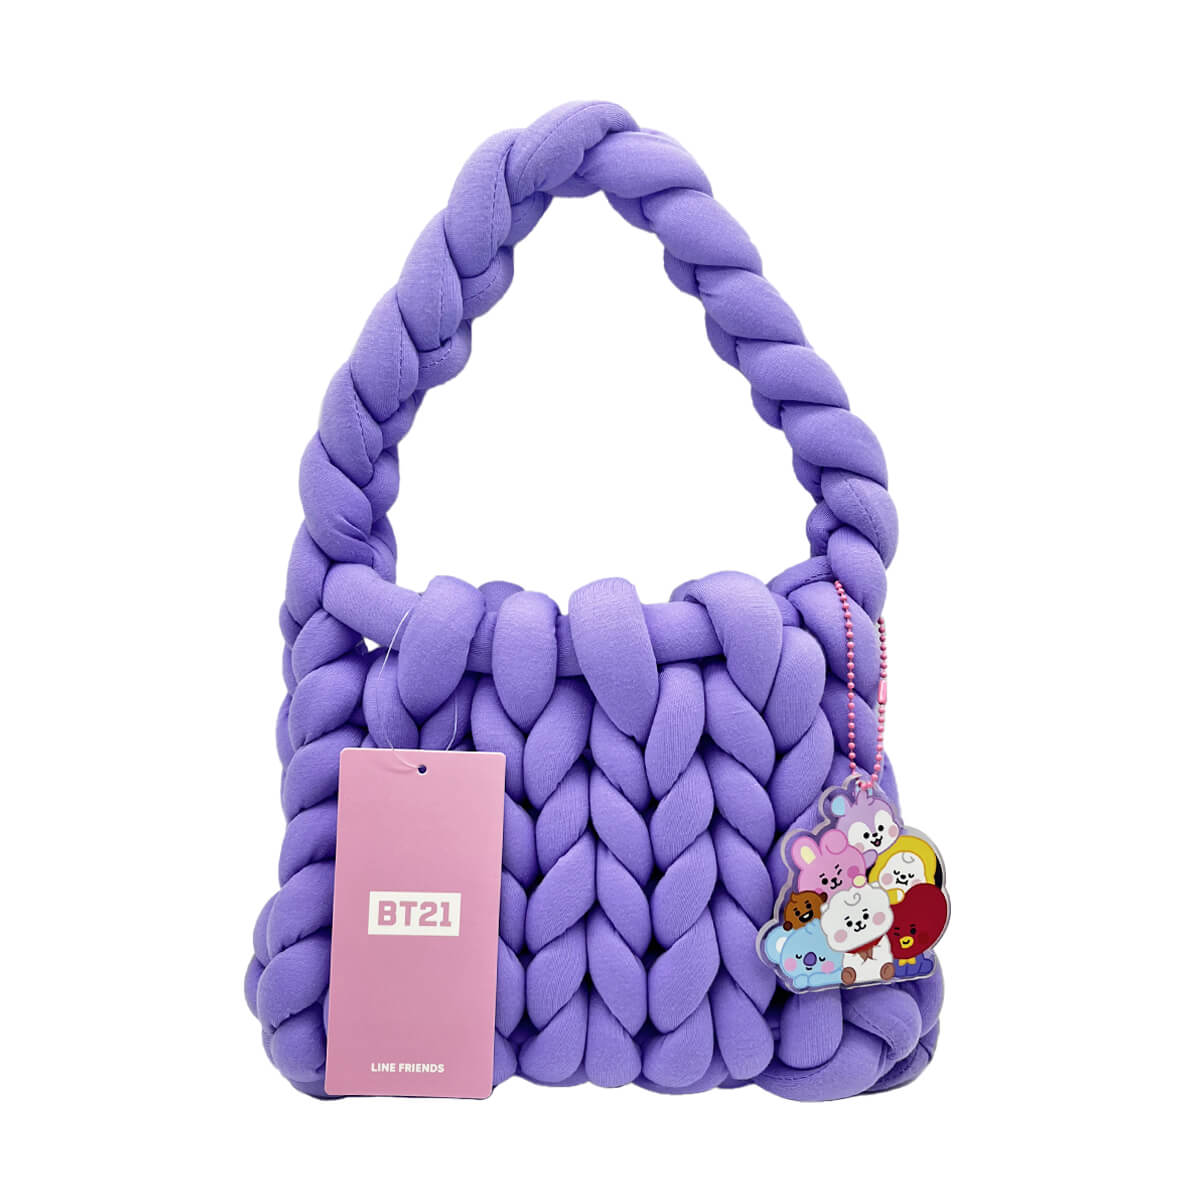 Yarn and Colors Basket Bag Crochet Kit 006 Taupe - Yarnplaza.com